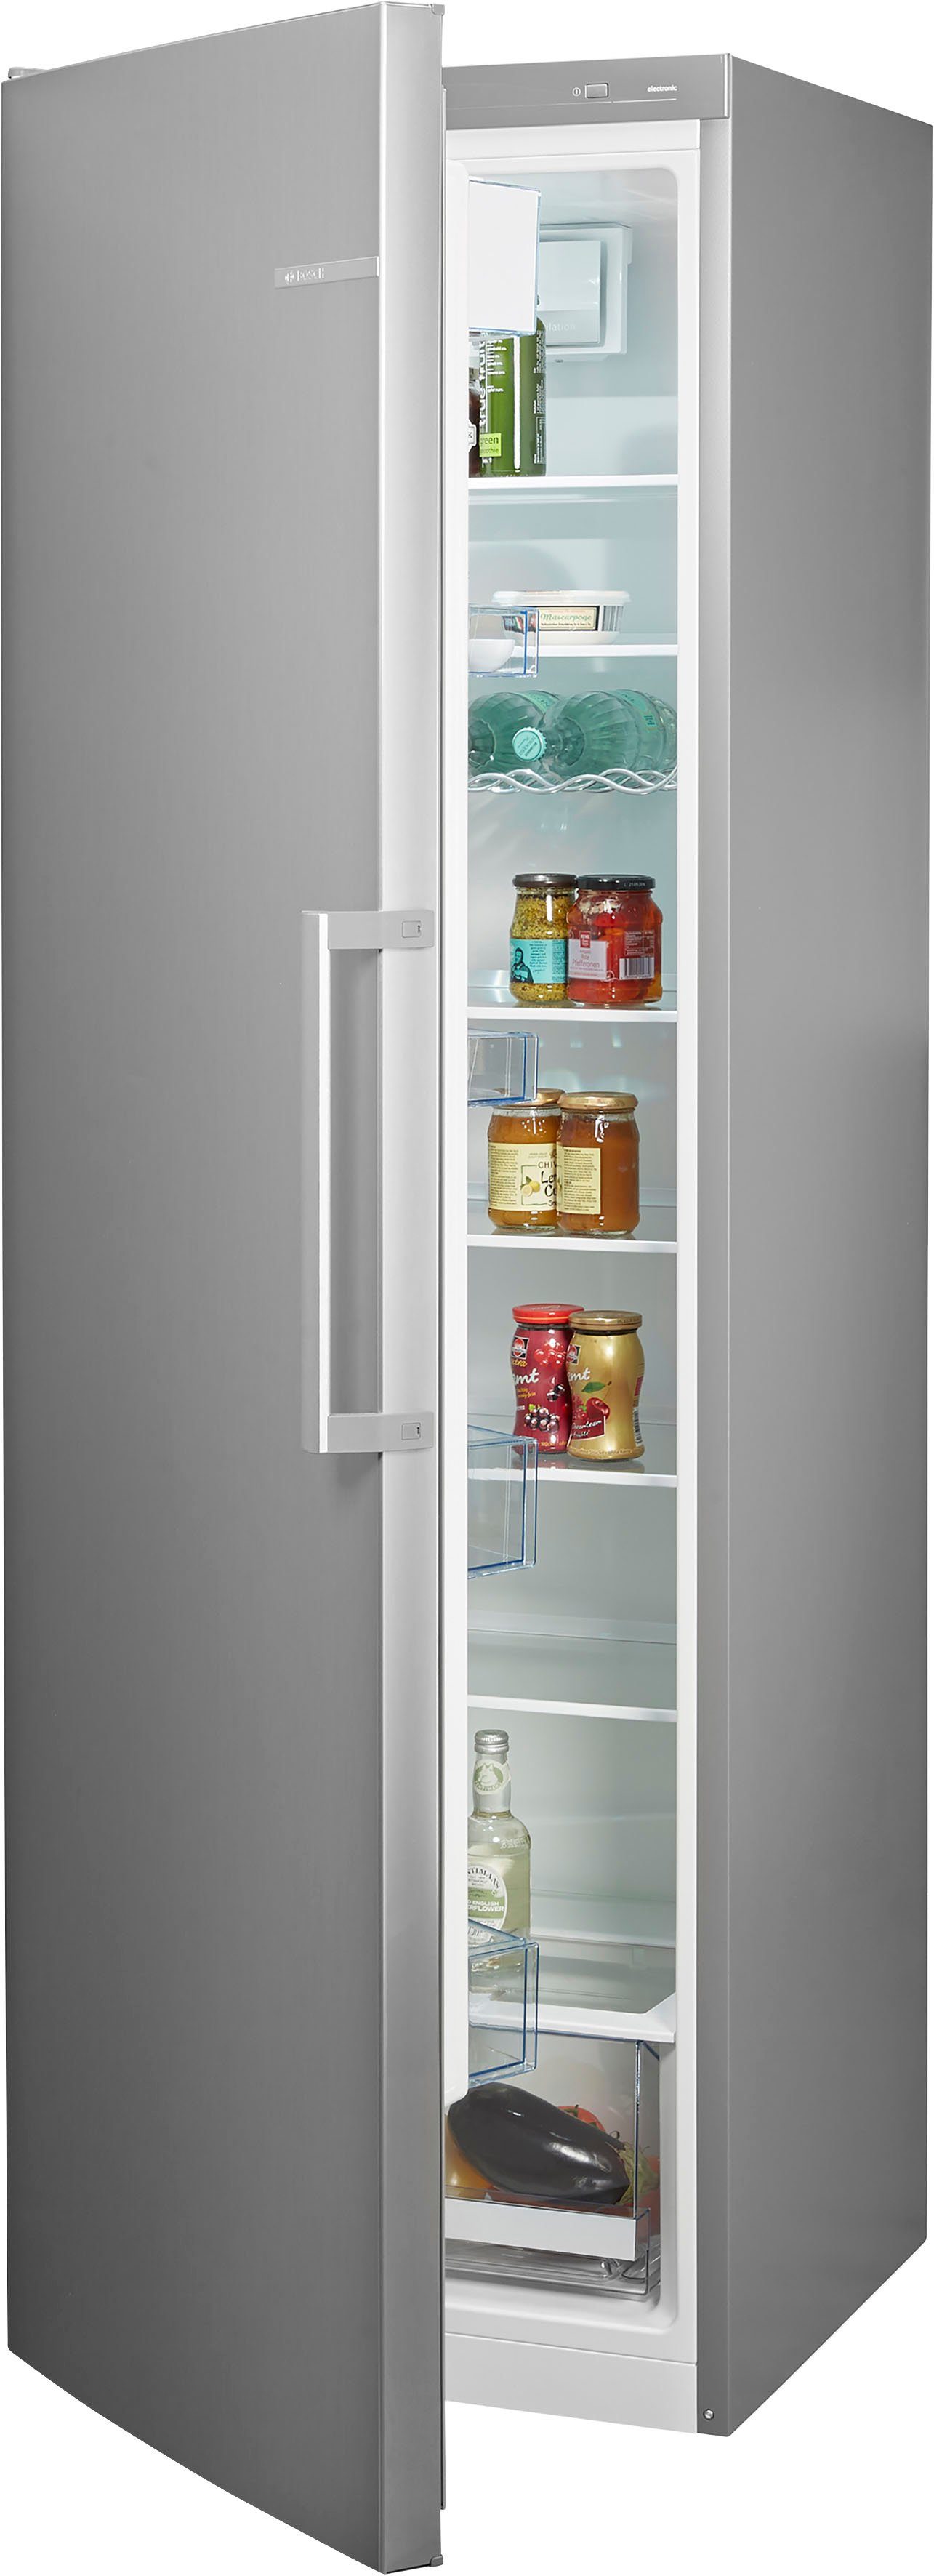 BOSCH Kühlschrank 4 KSV36VLDP, 186 cm hoch, 60 cm breit online kaufen | OTTO